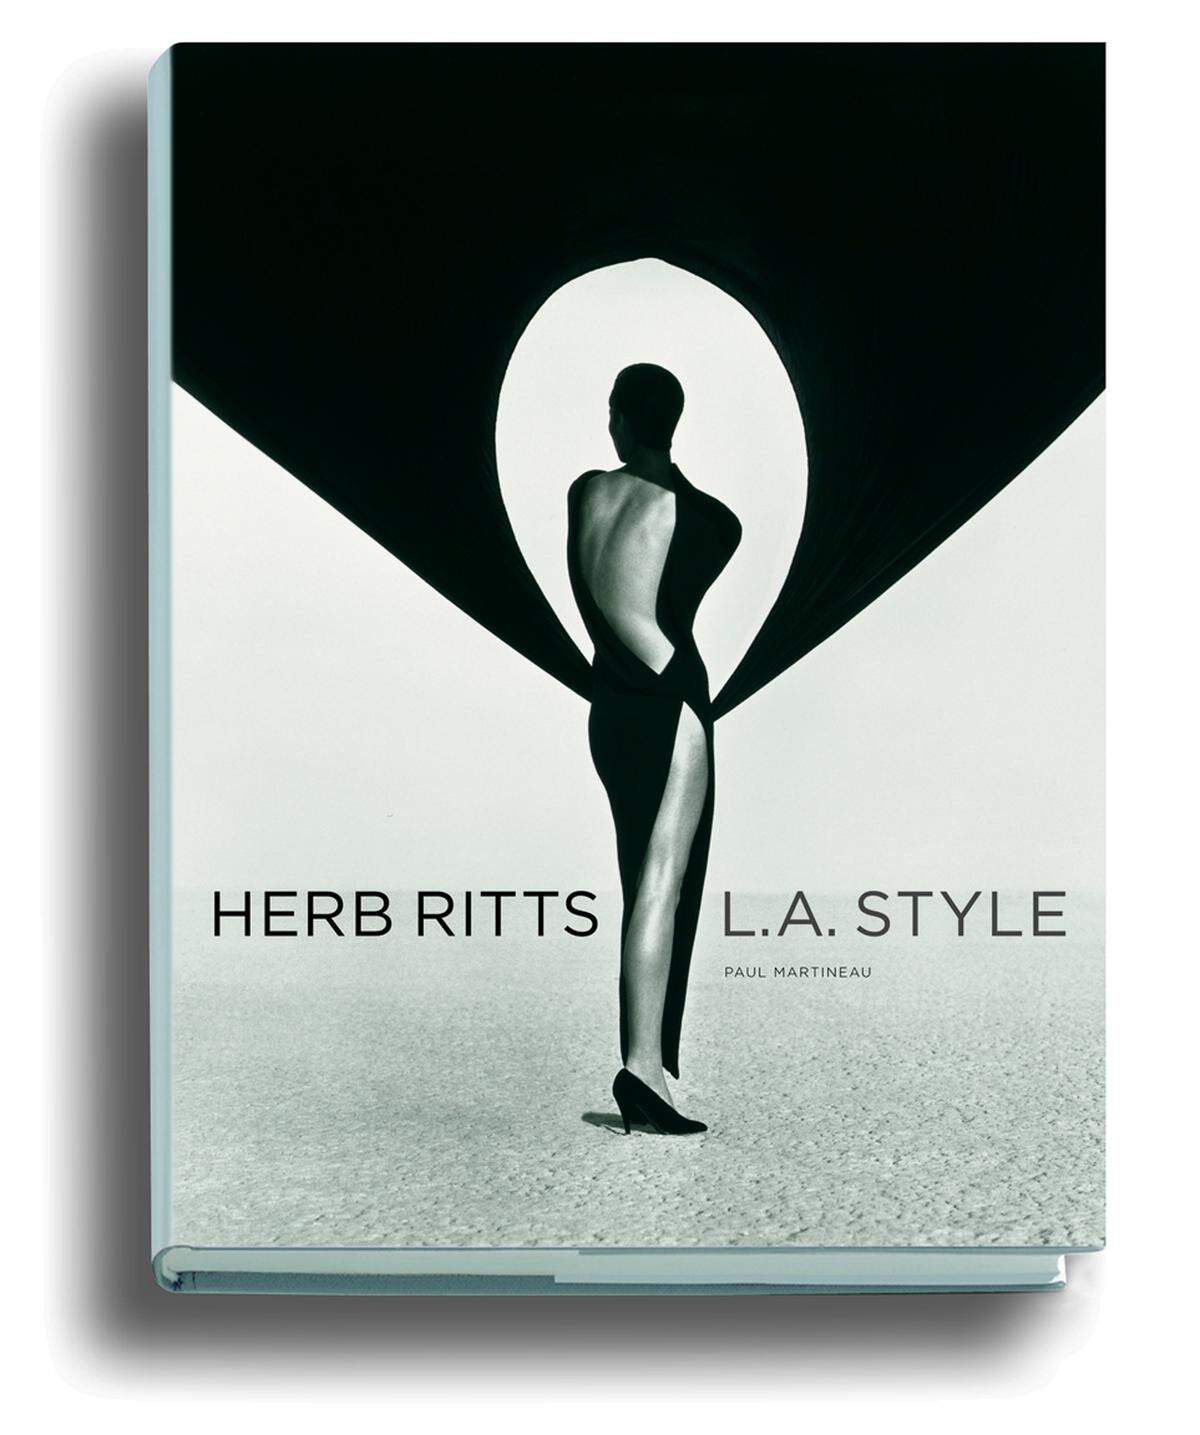 Begleitend zur Ausstellung gibt es schon jetzt das Buch L.A. Style mit den besten Arbeiten des Fotografen vom Verlag Schirmer/Mosel.